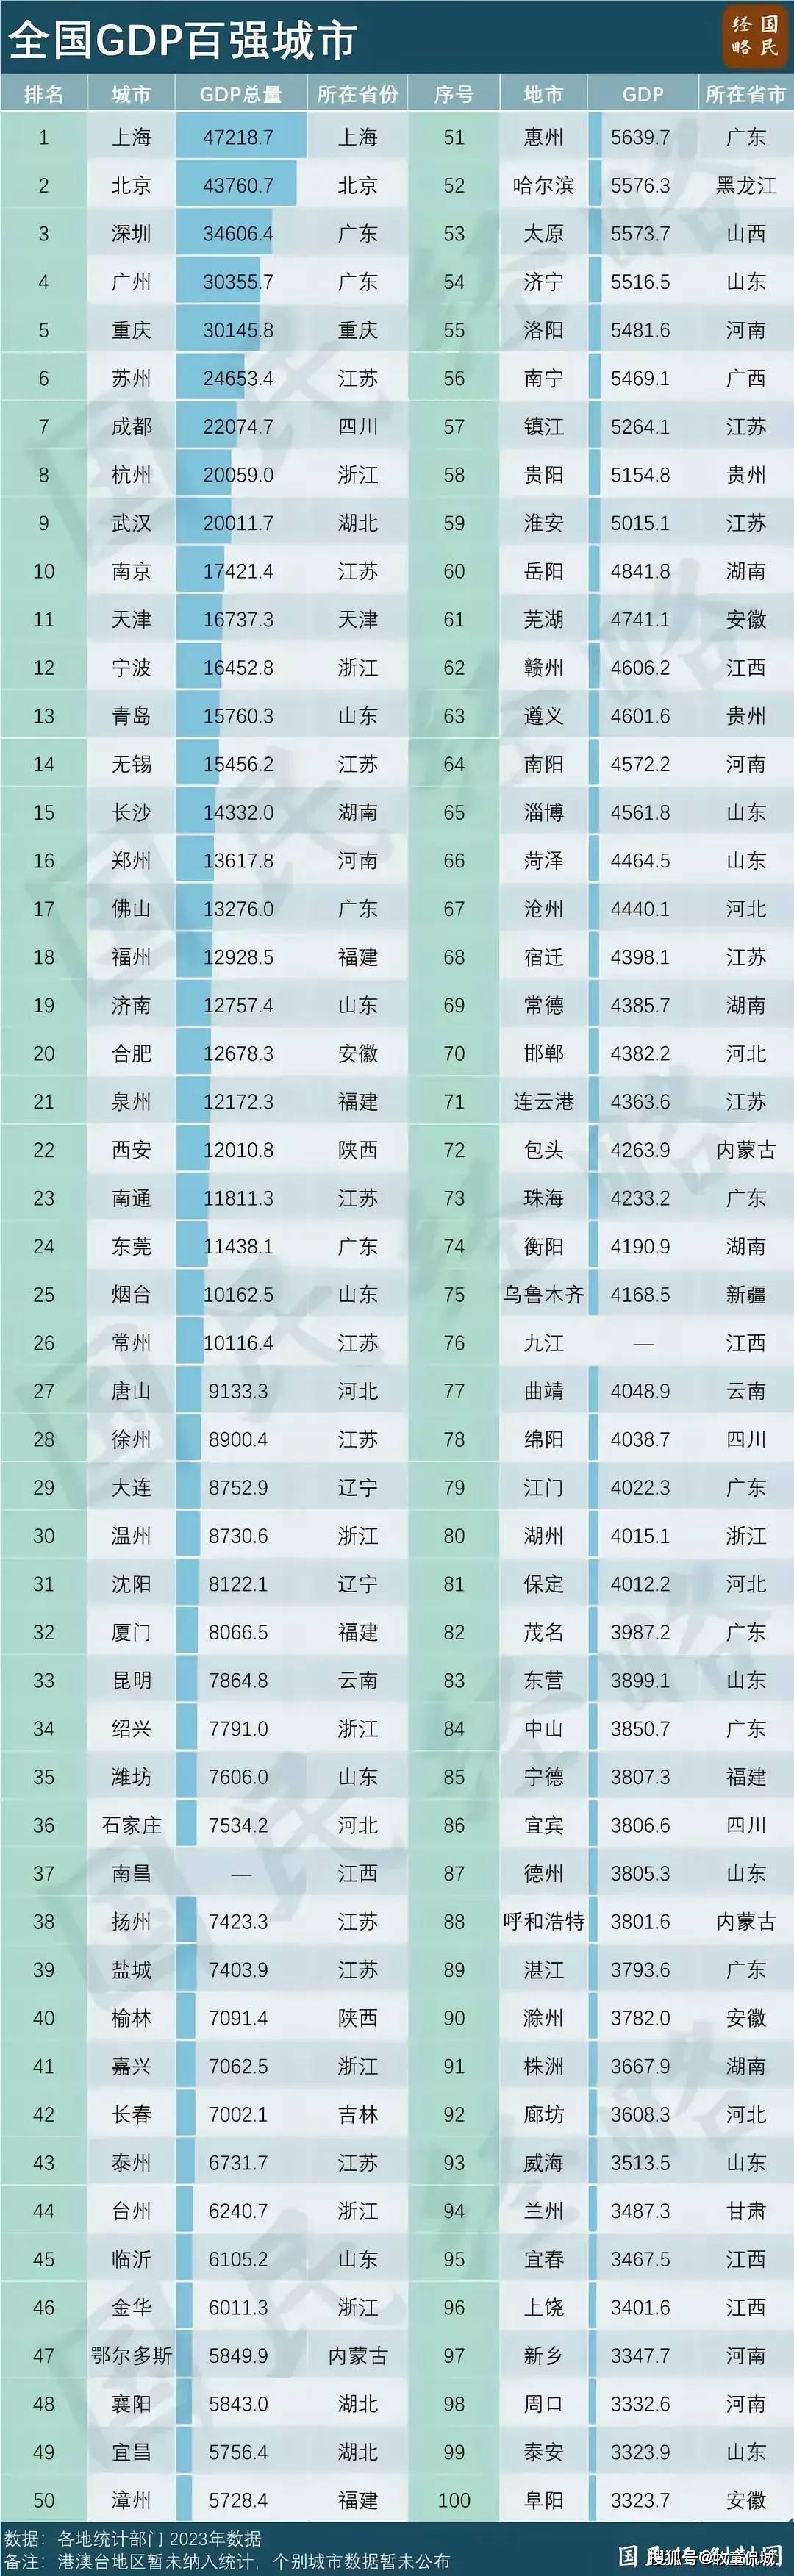 全国gdp百强城市榜:福建省5个城市入围,漳州排名第50